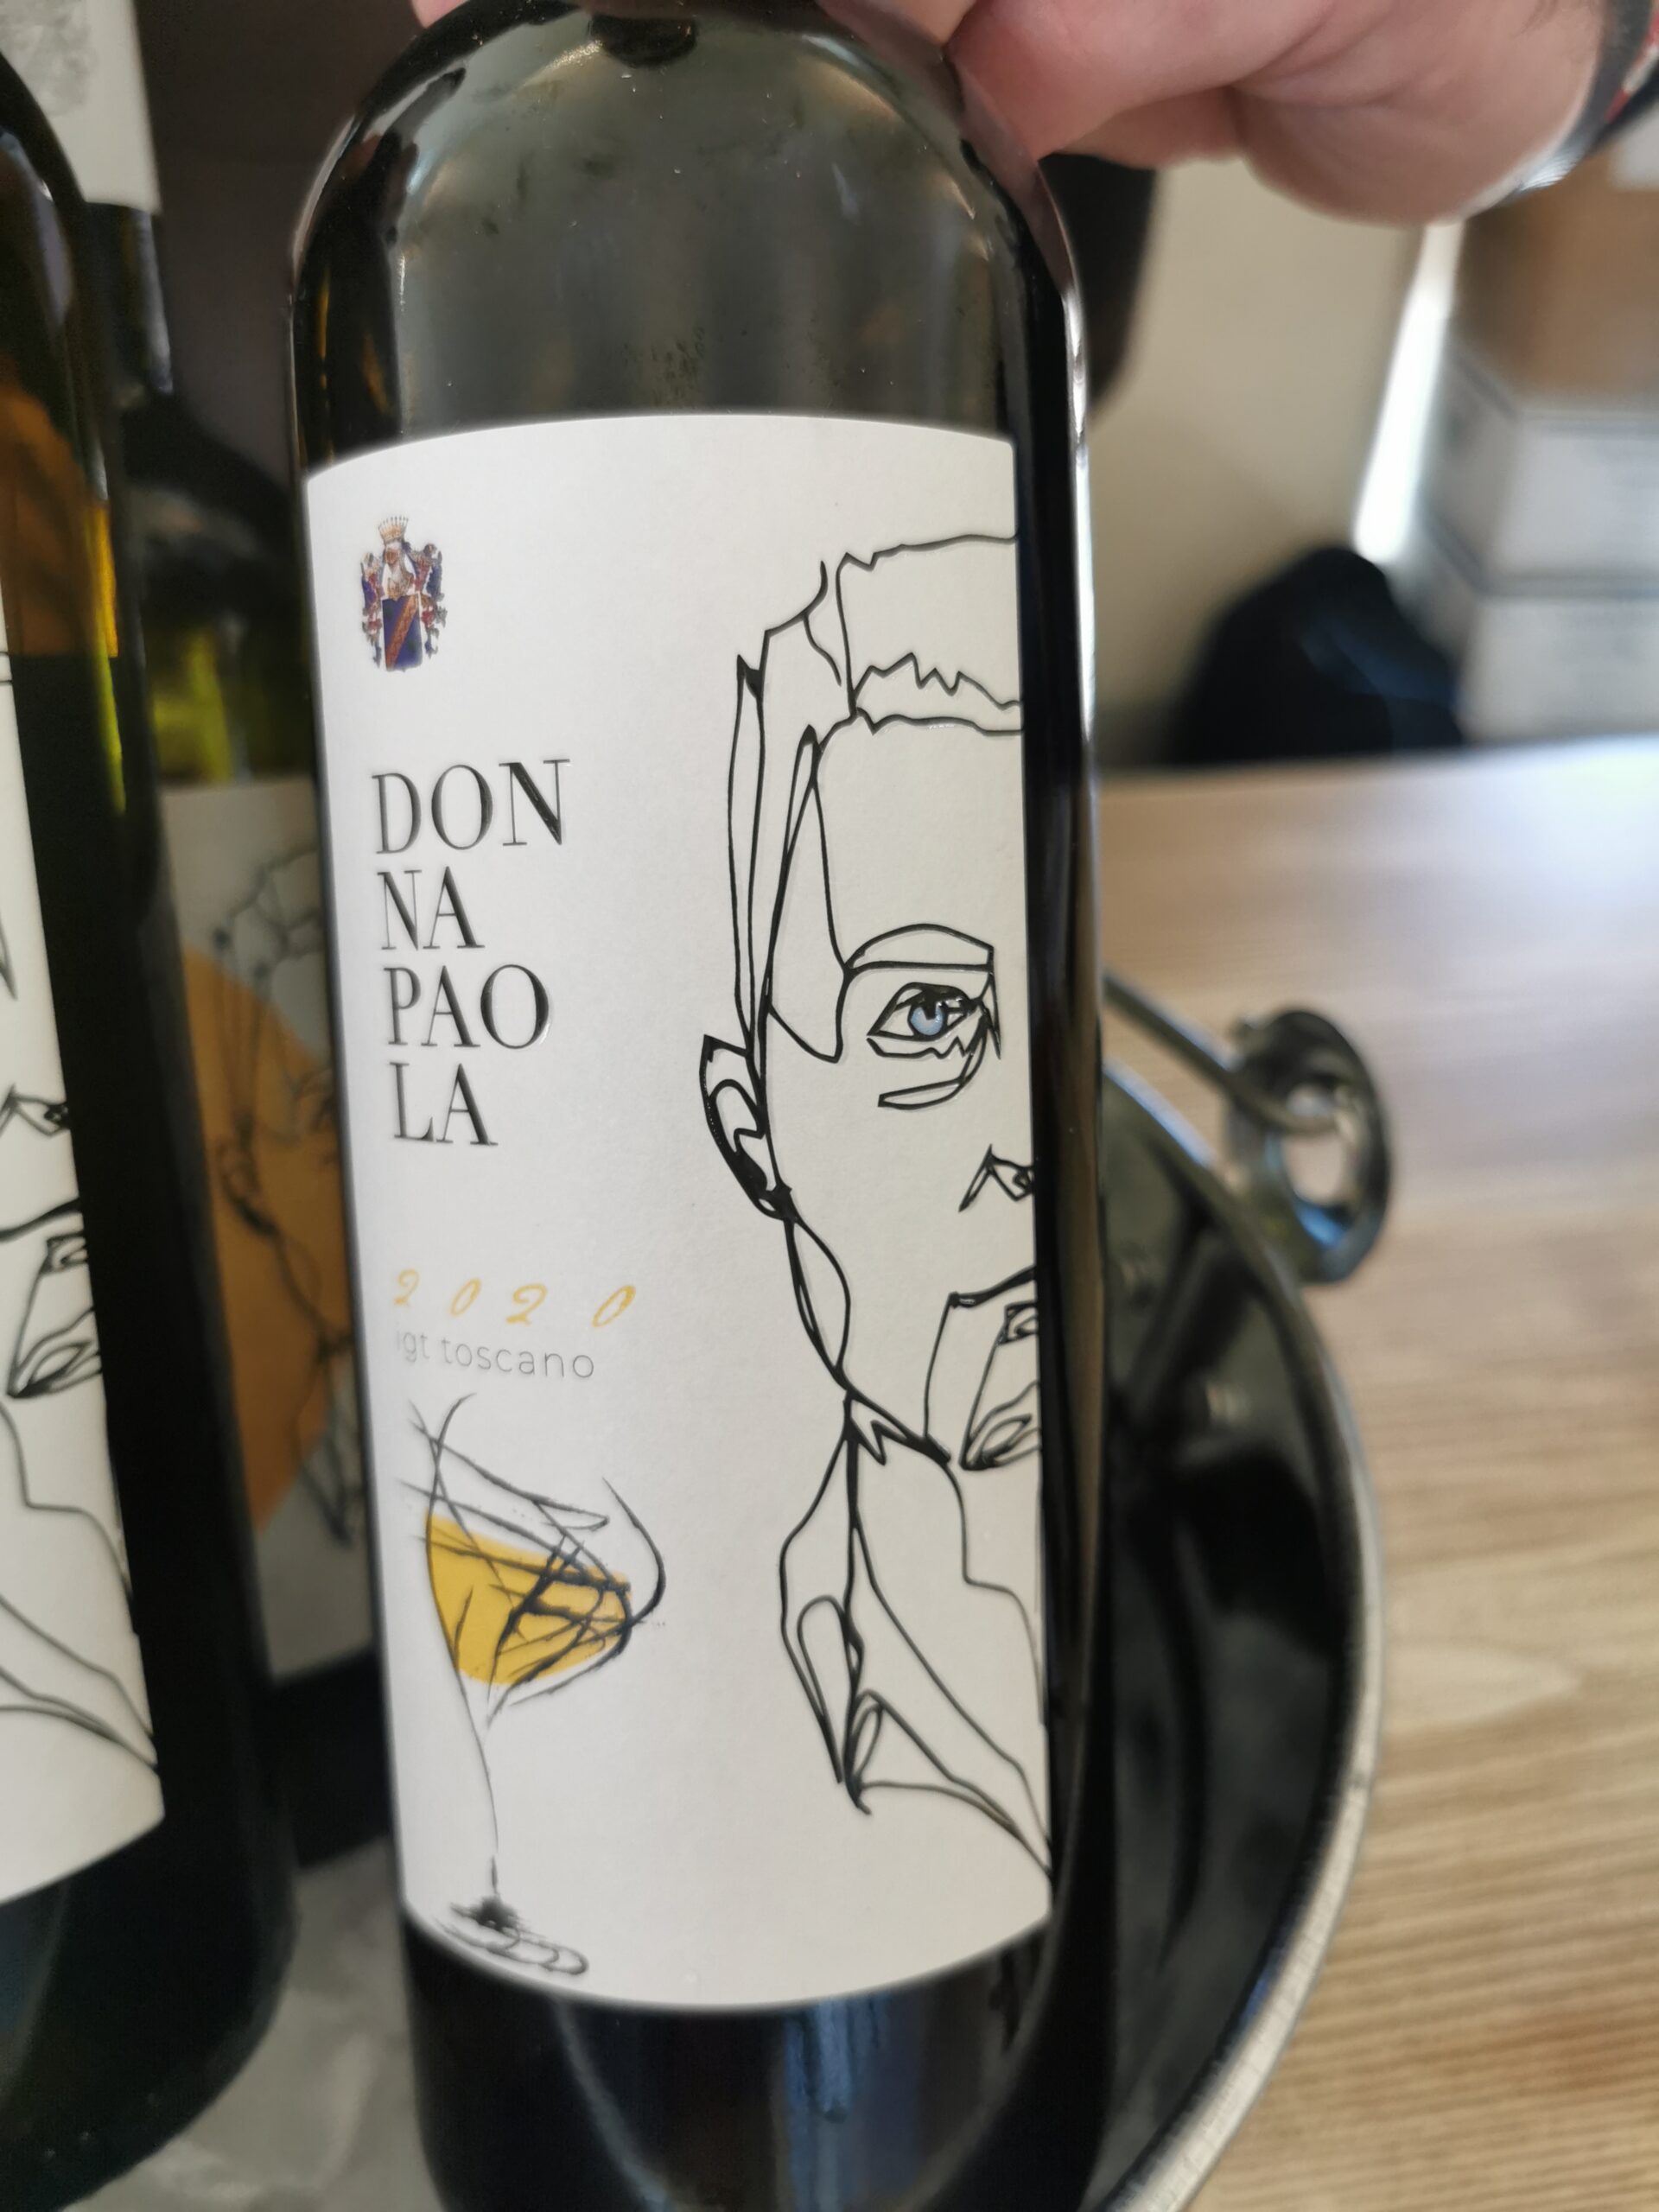 Bottiglia Donna Paola Cantina Biagiotti, articolo: Vini della Costa, l'anteprima a Lucca Gustosa 2023, foto di Elsa Leandri